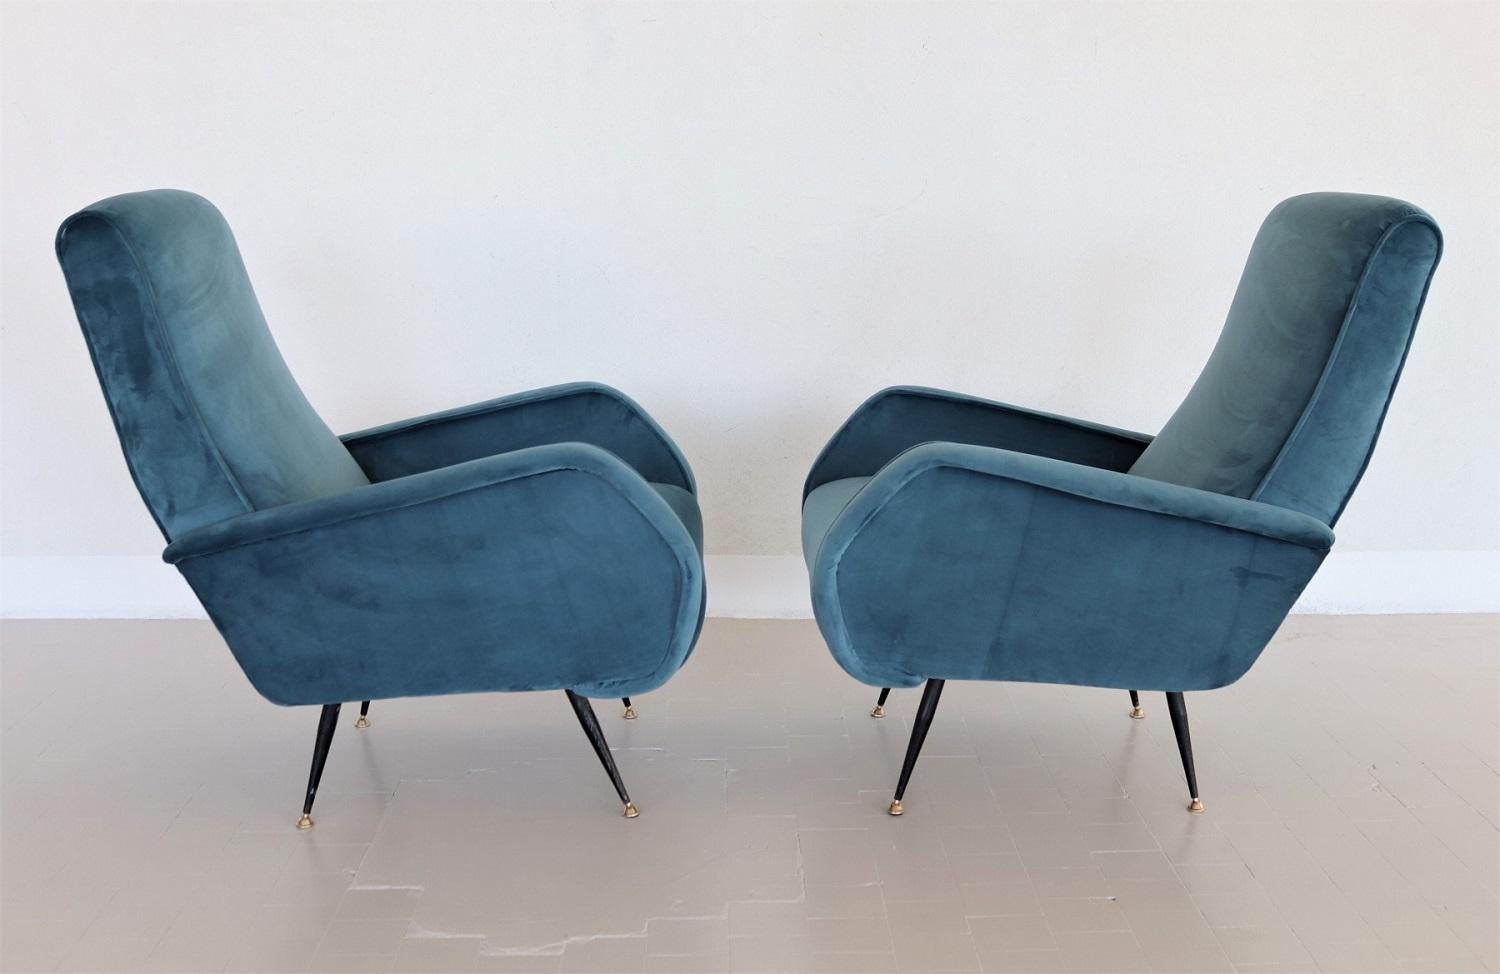 Mid-20th Century Italian Vintage Armchairs in Blue Velvet and Brass Stiletto Feet, 1950s